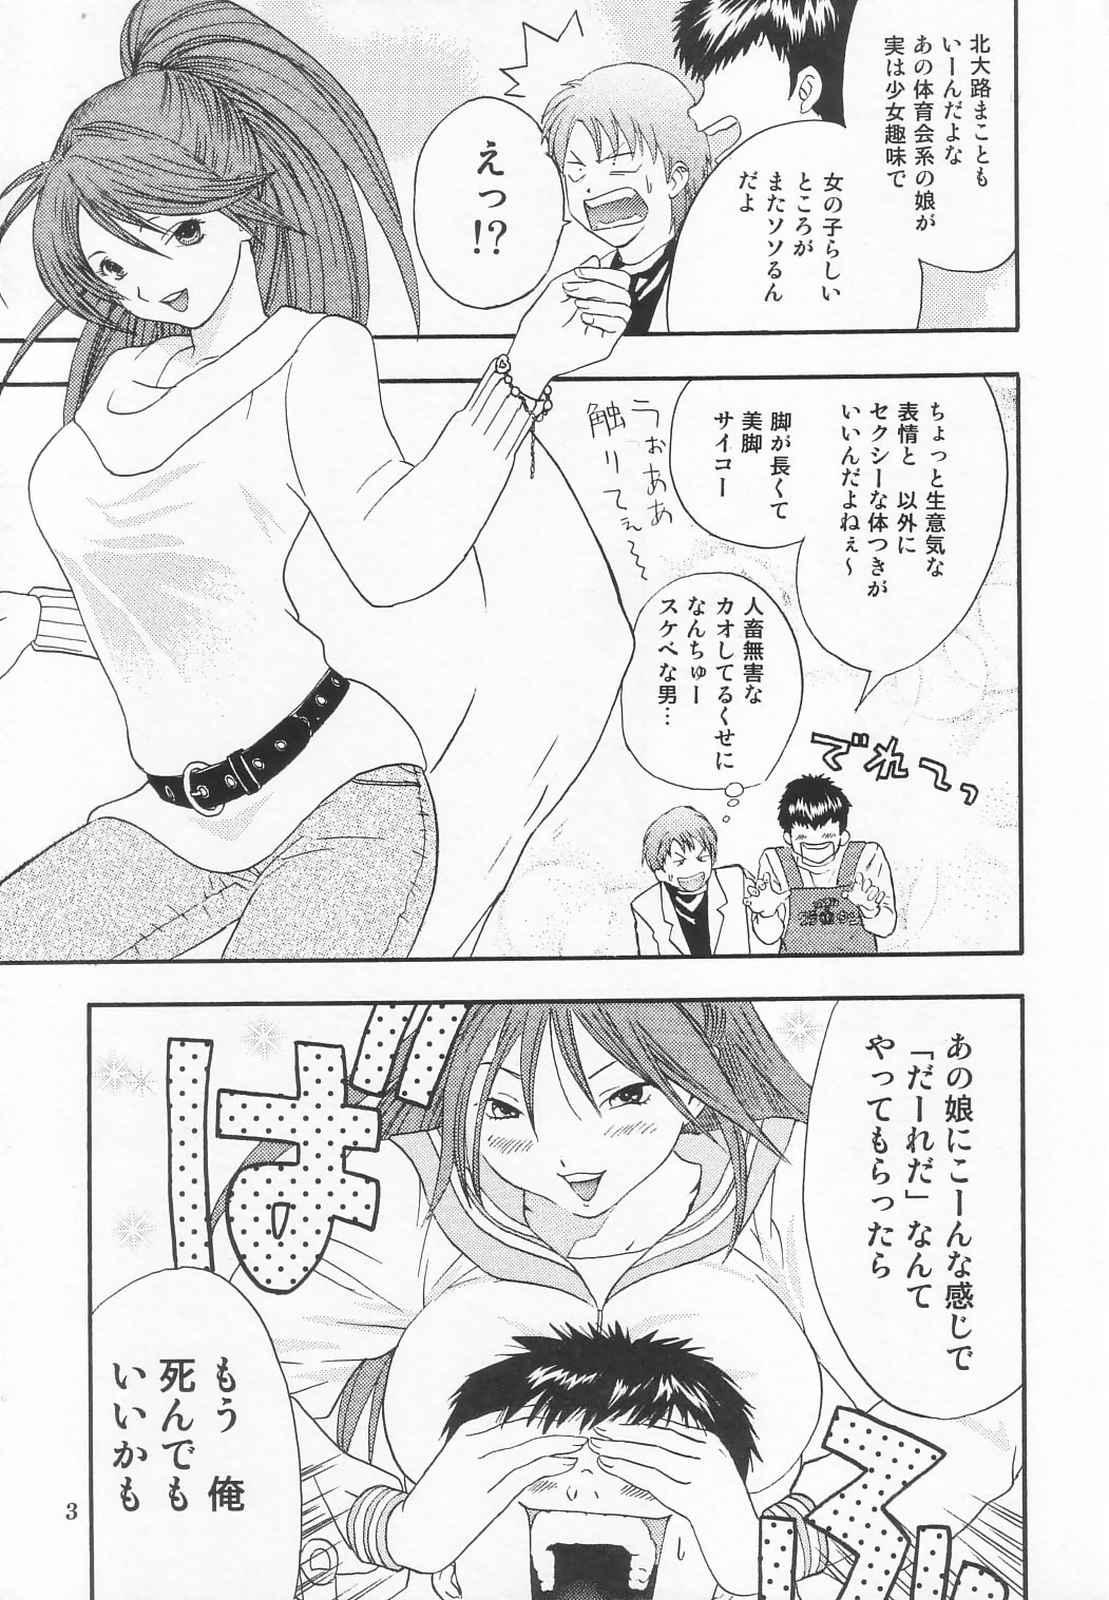 Storyline Tokusatsu Magazine x 2003 Fuyu Gou - Sailor moon Ichigo 100 Hot Pussy - Page 5